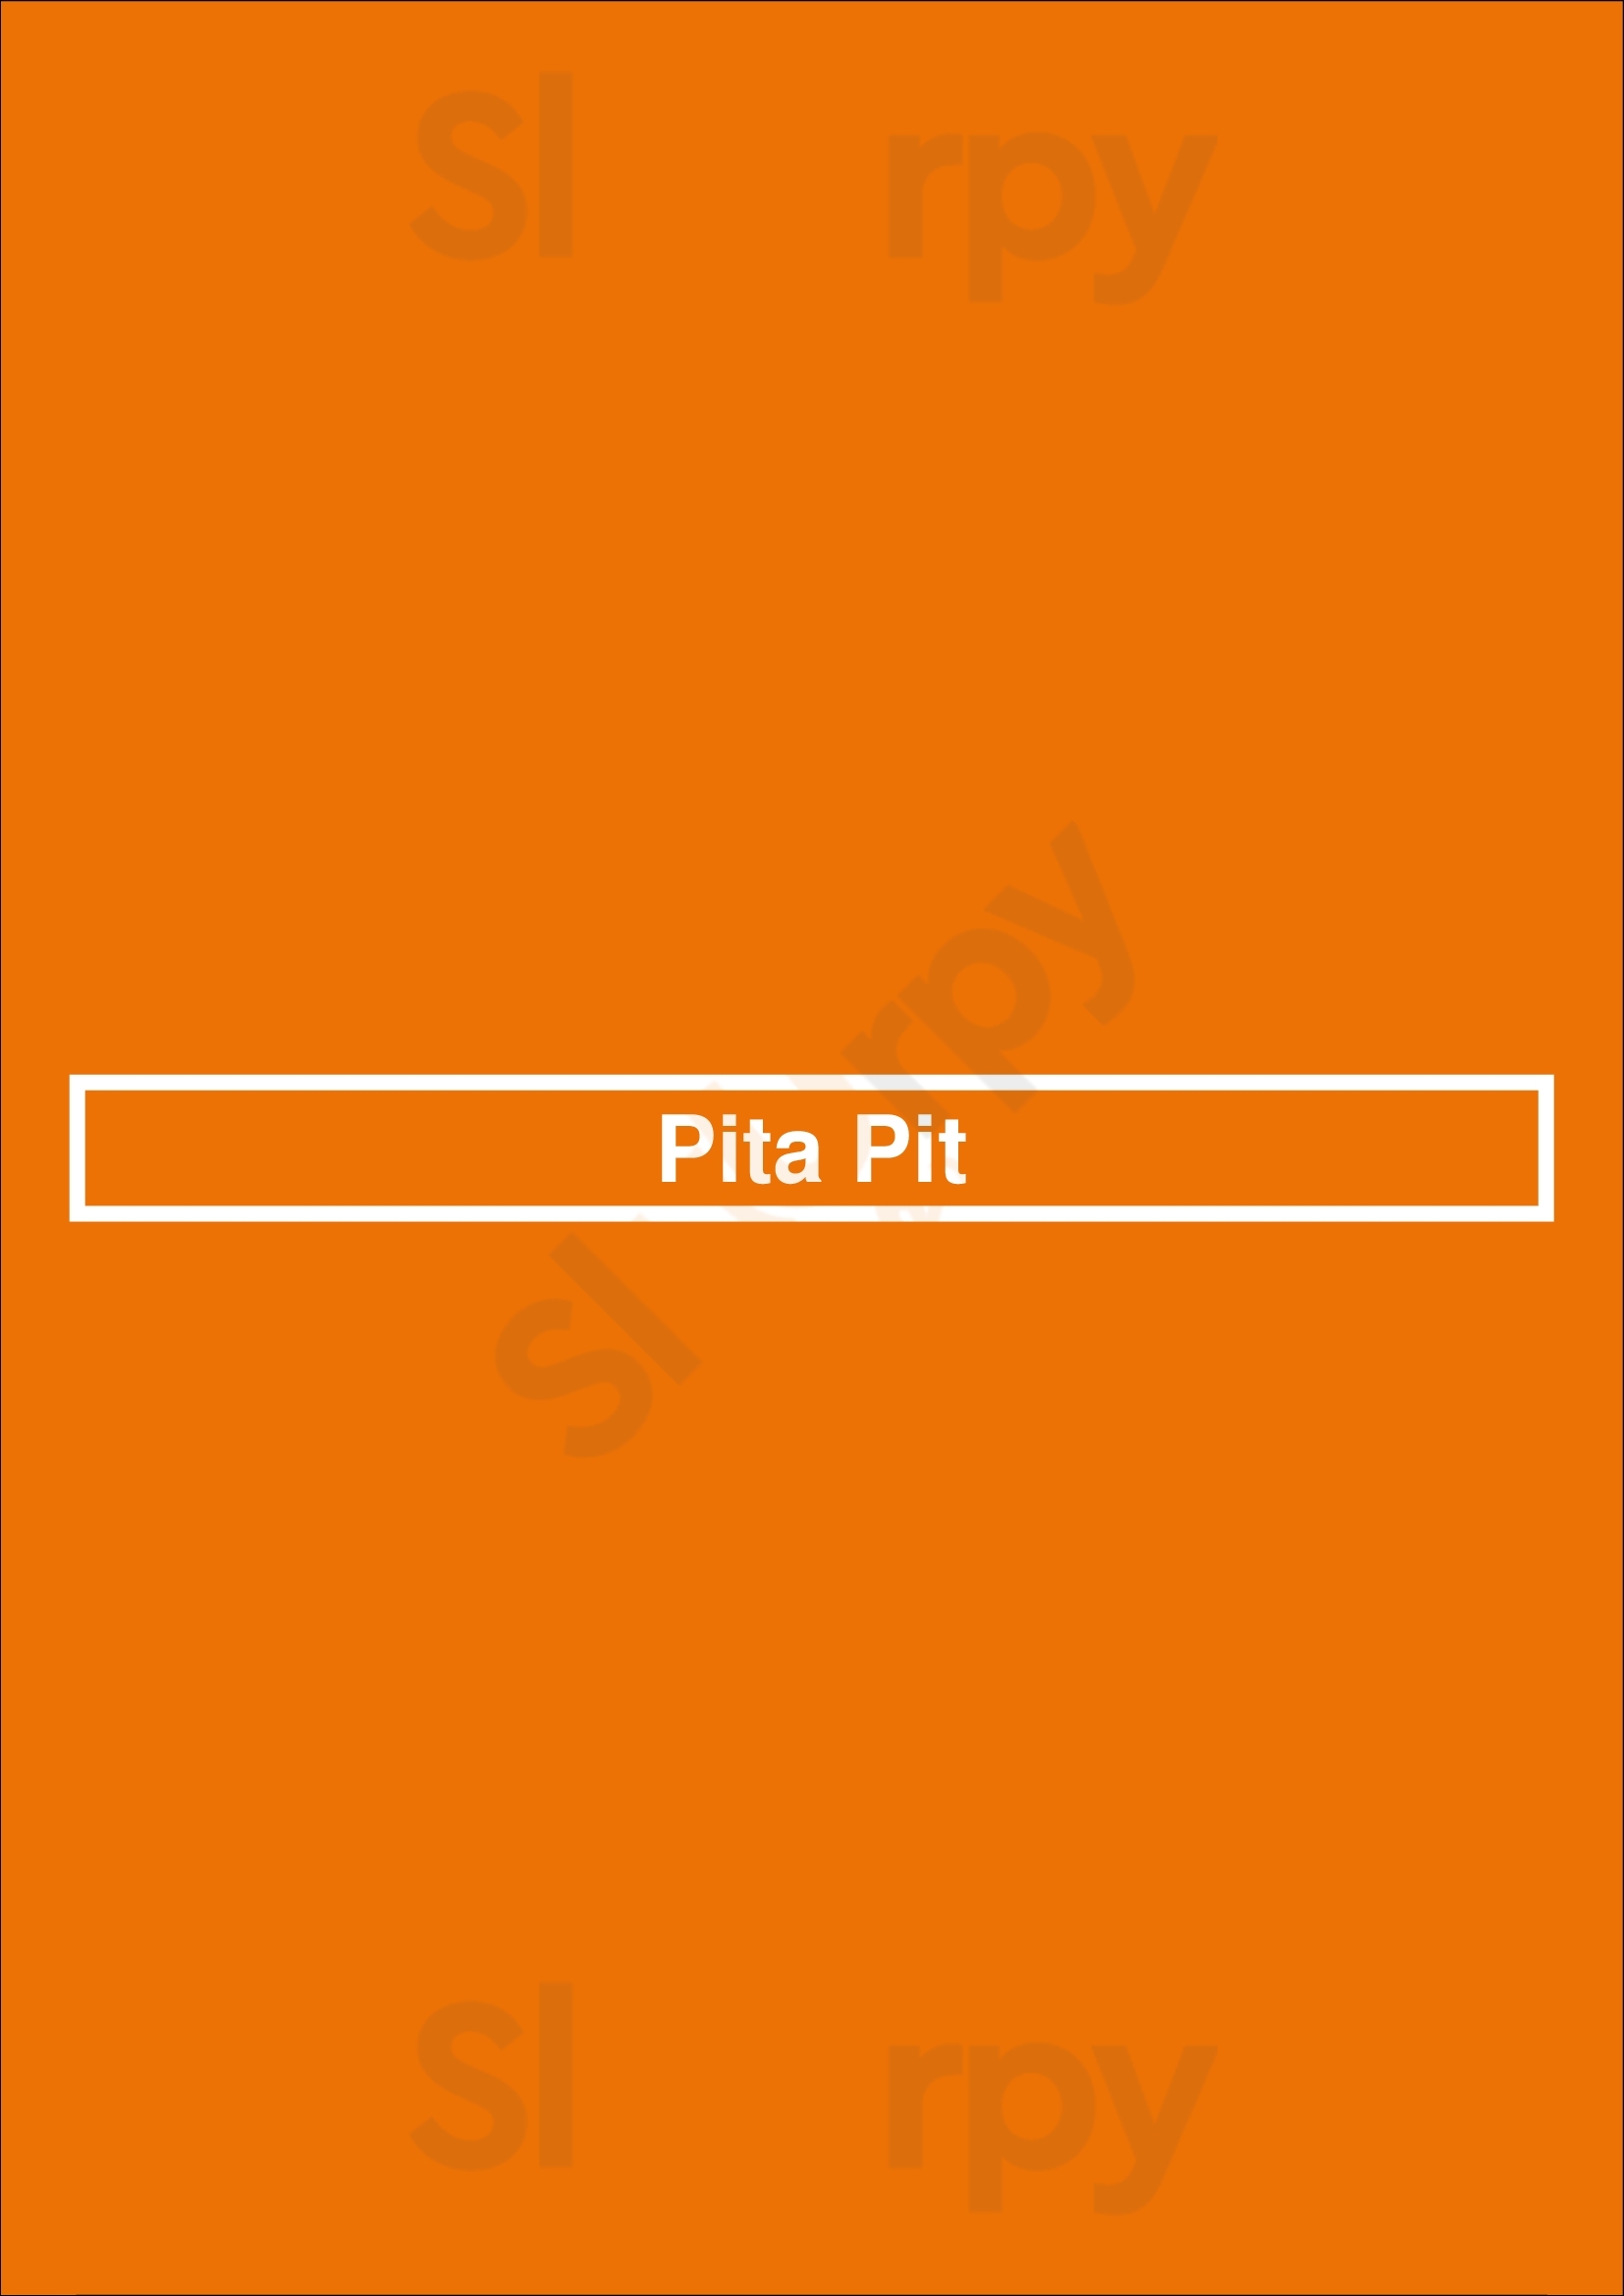 Pita Pit Milton Menu - 1